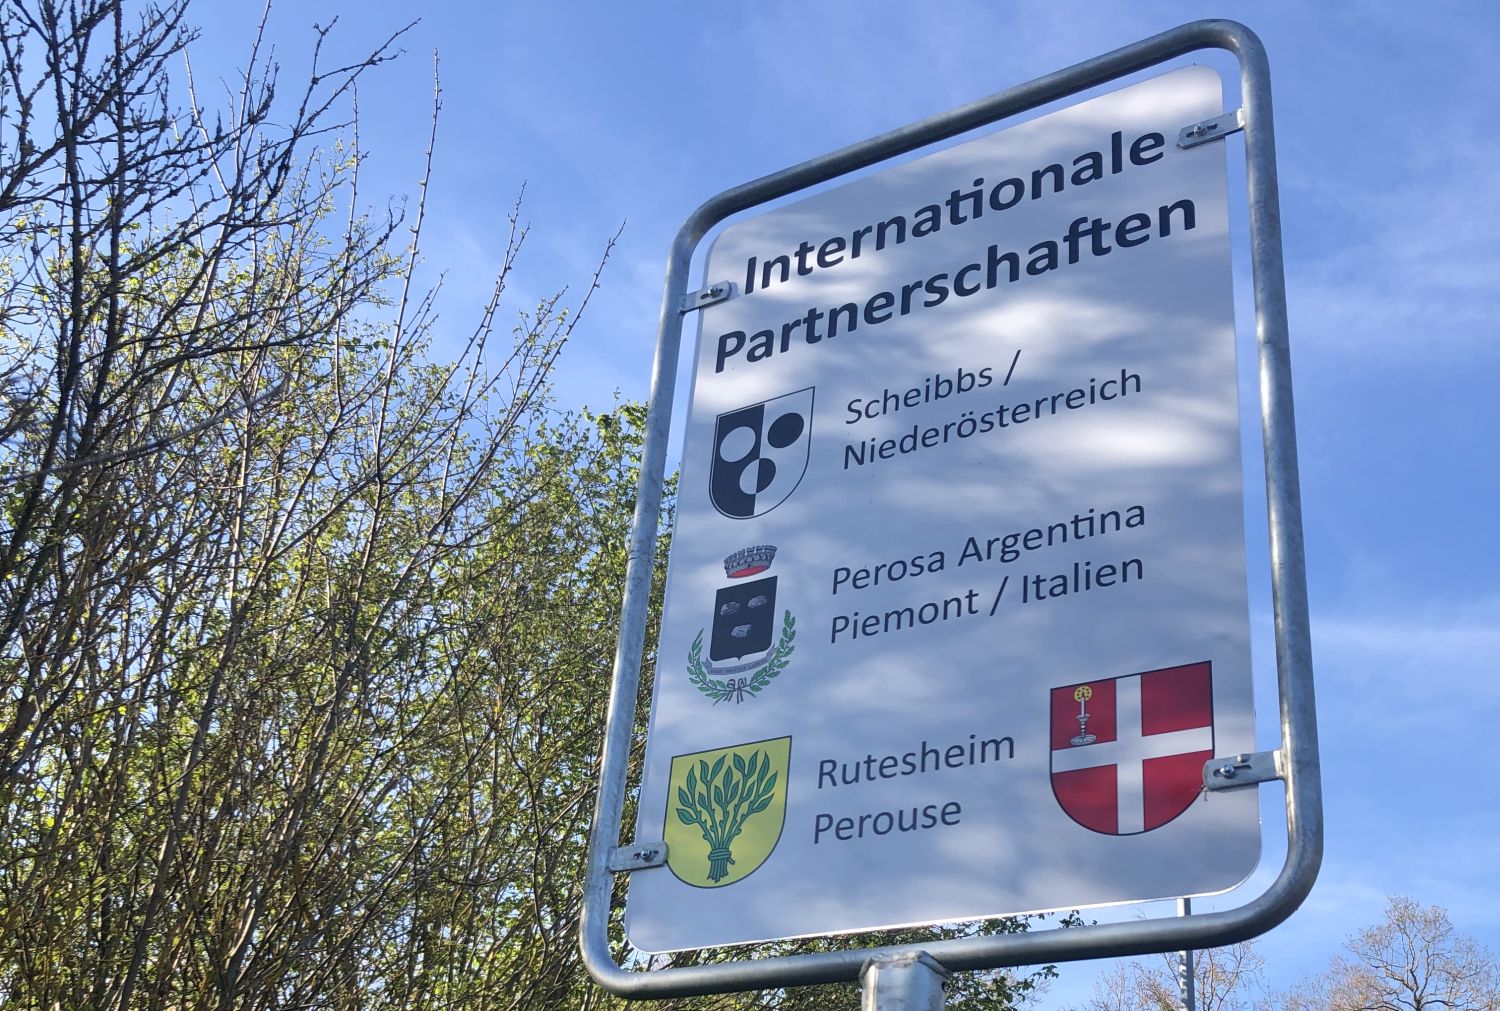 Straßenschild mit Aufschrift und den dazugehörigen Wappen: Internationale Partnerschaften Scheibbs Niederösterreich, Perosa Argentina Piemont/Italien,                 